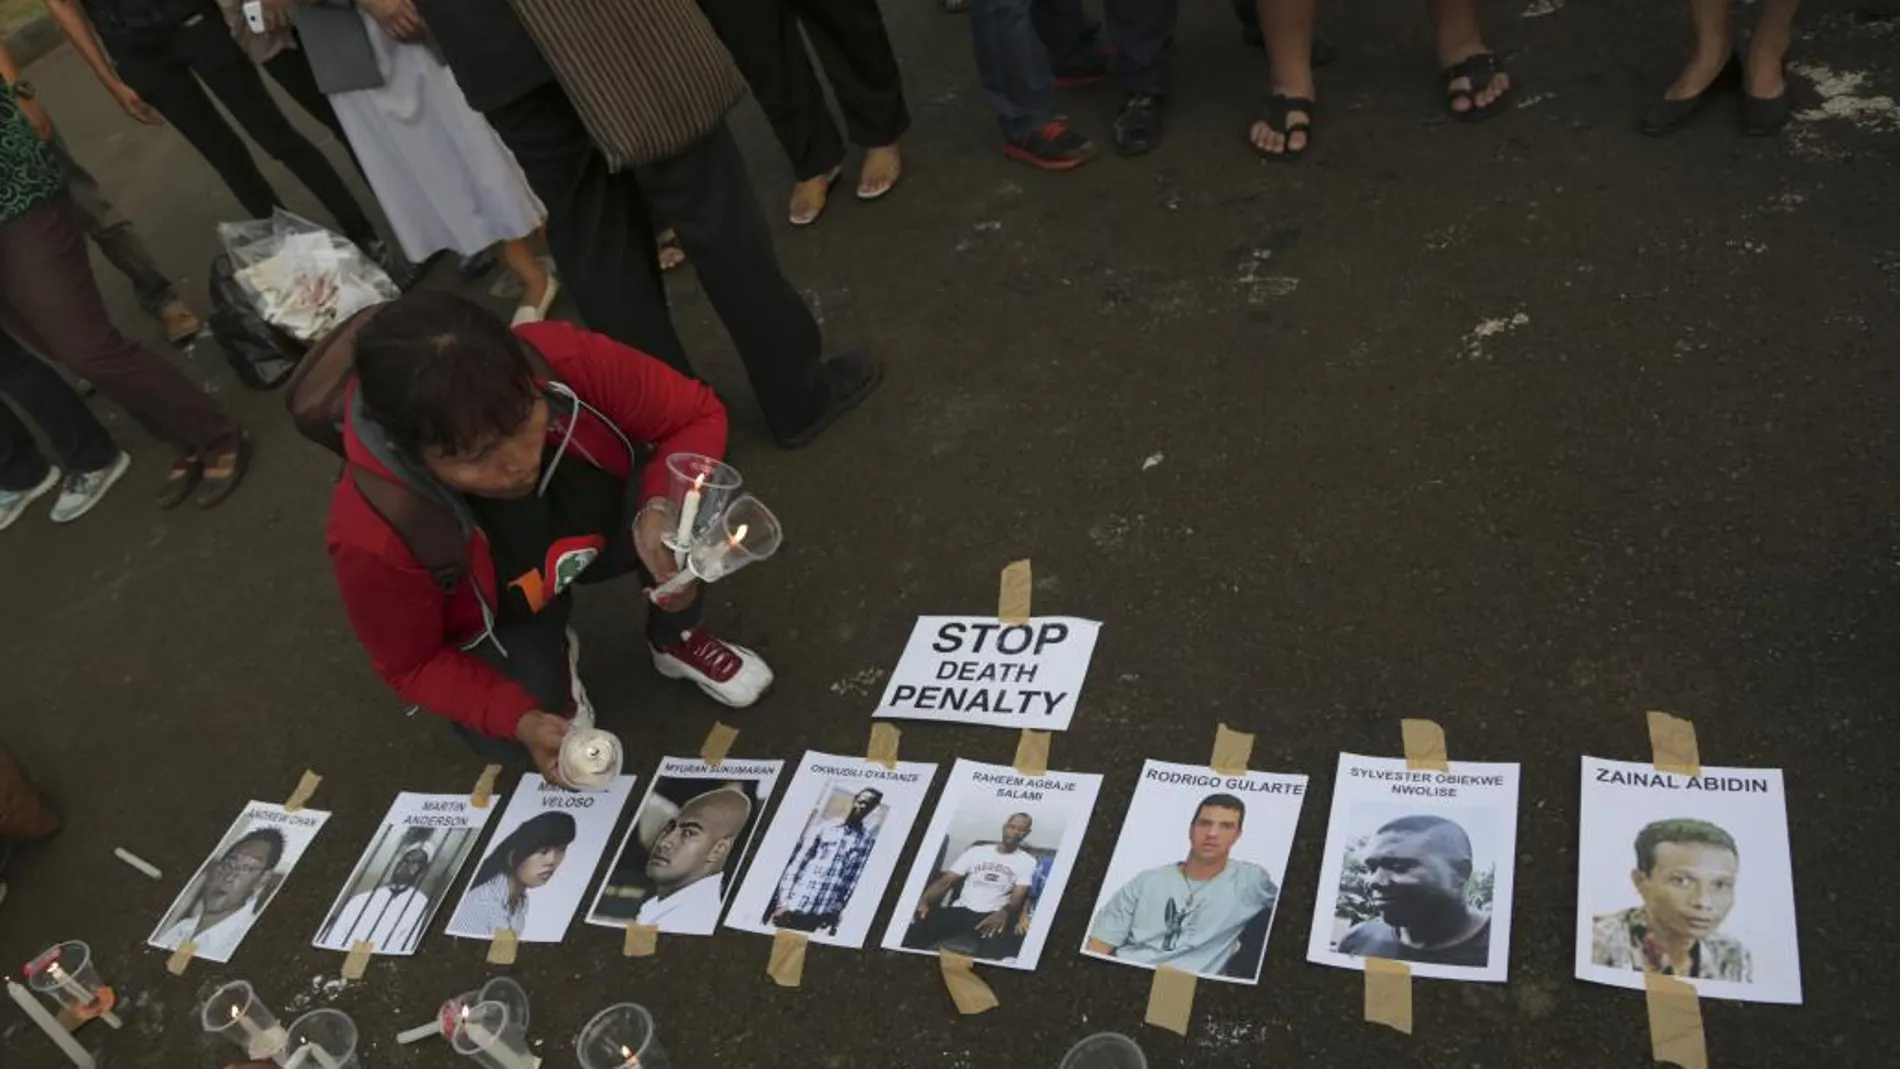 Activistas proderechos humanos ponen velas junto a las imágenes de los presos en Jakarta